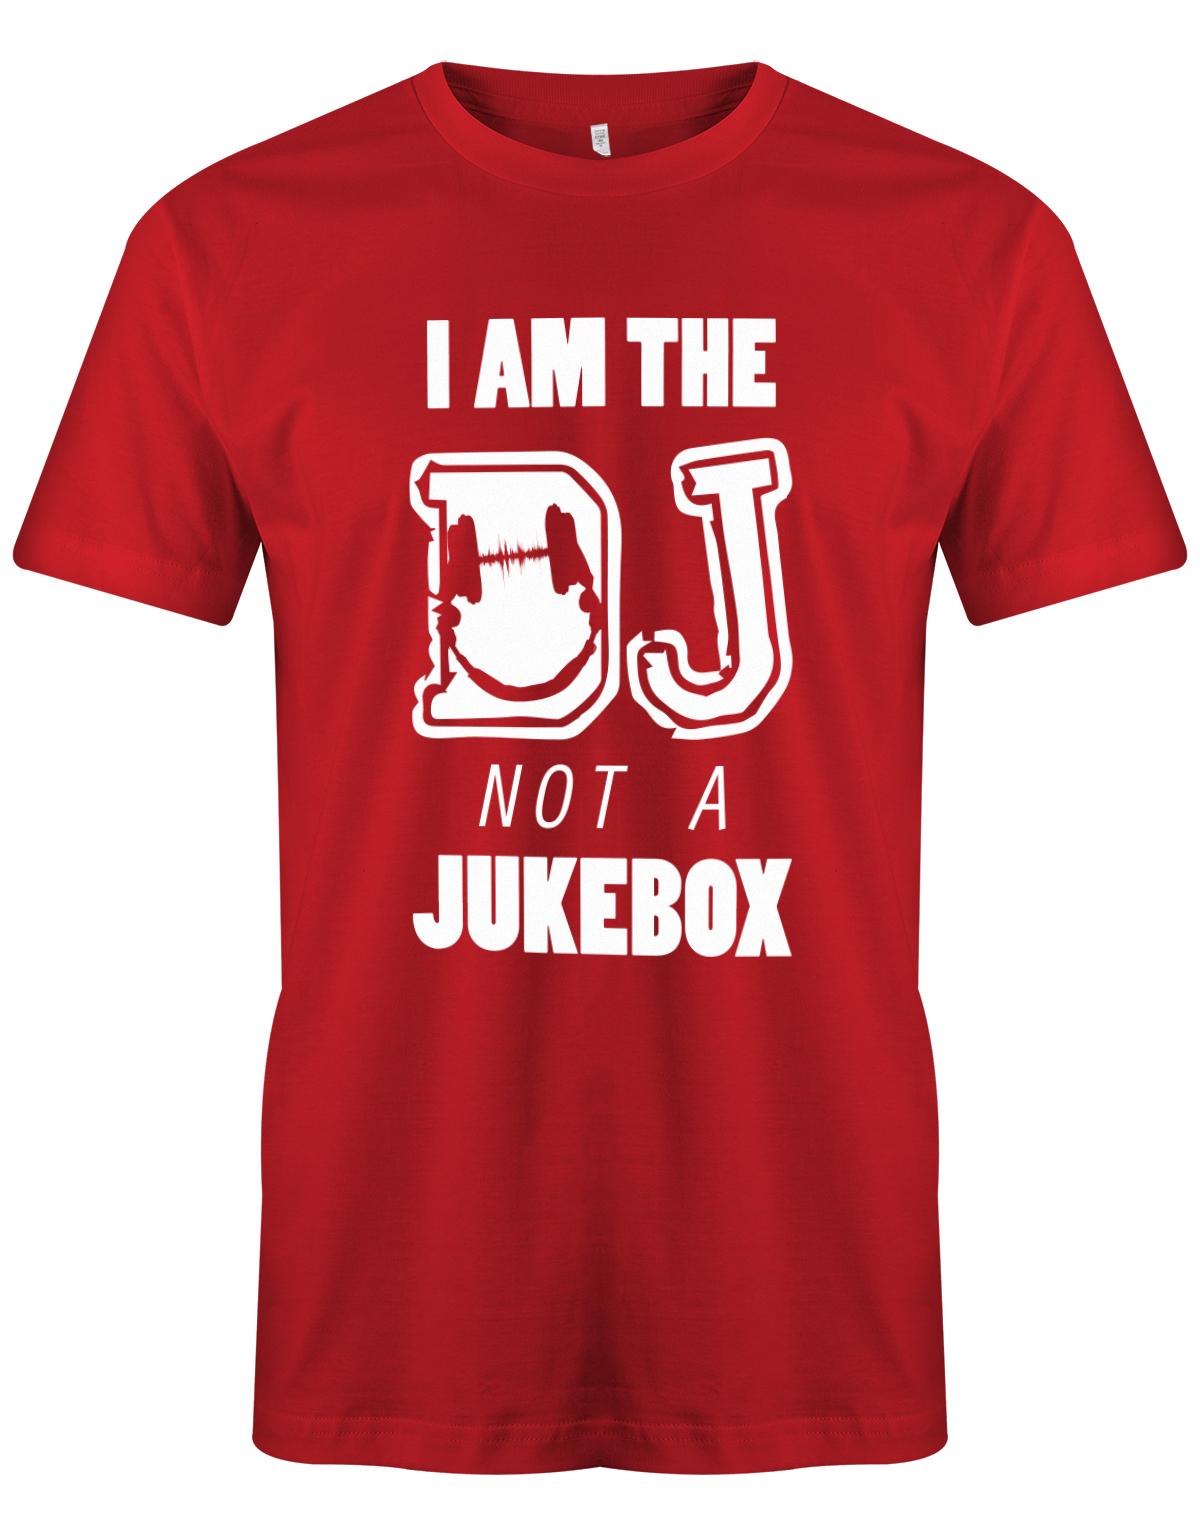 I-am-the-DJ-not-a-JUkebox-Herren-Rot